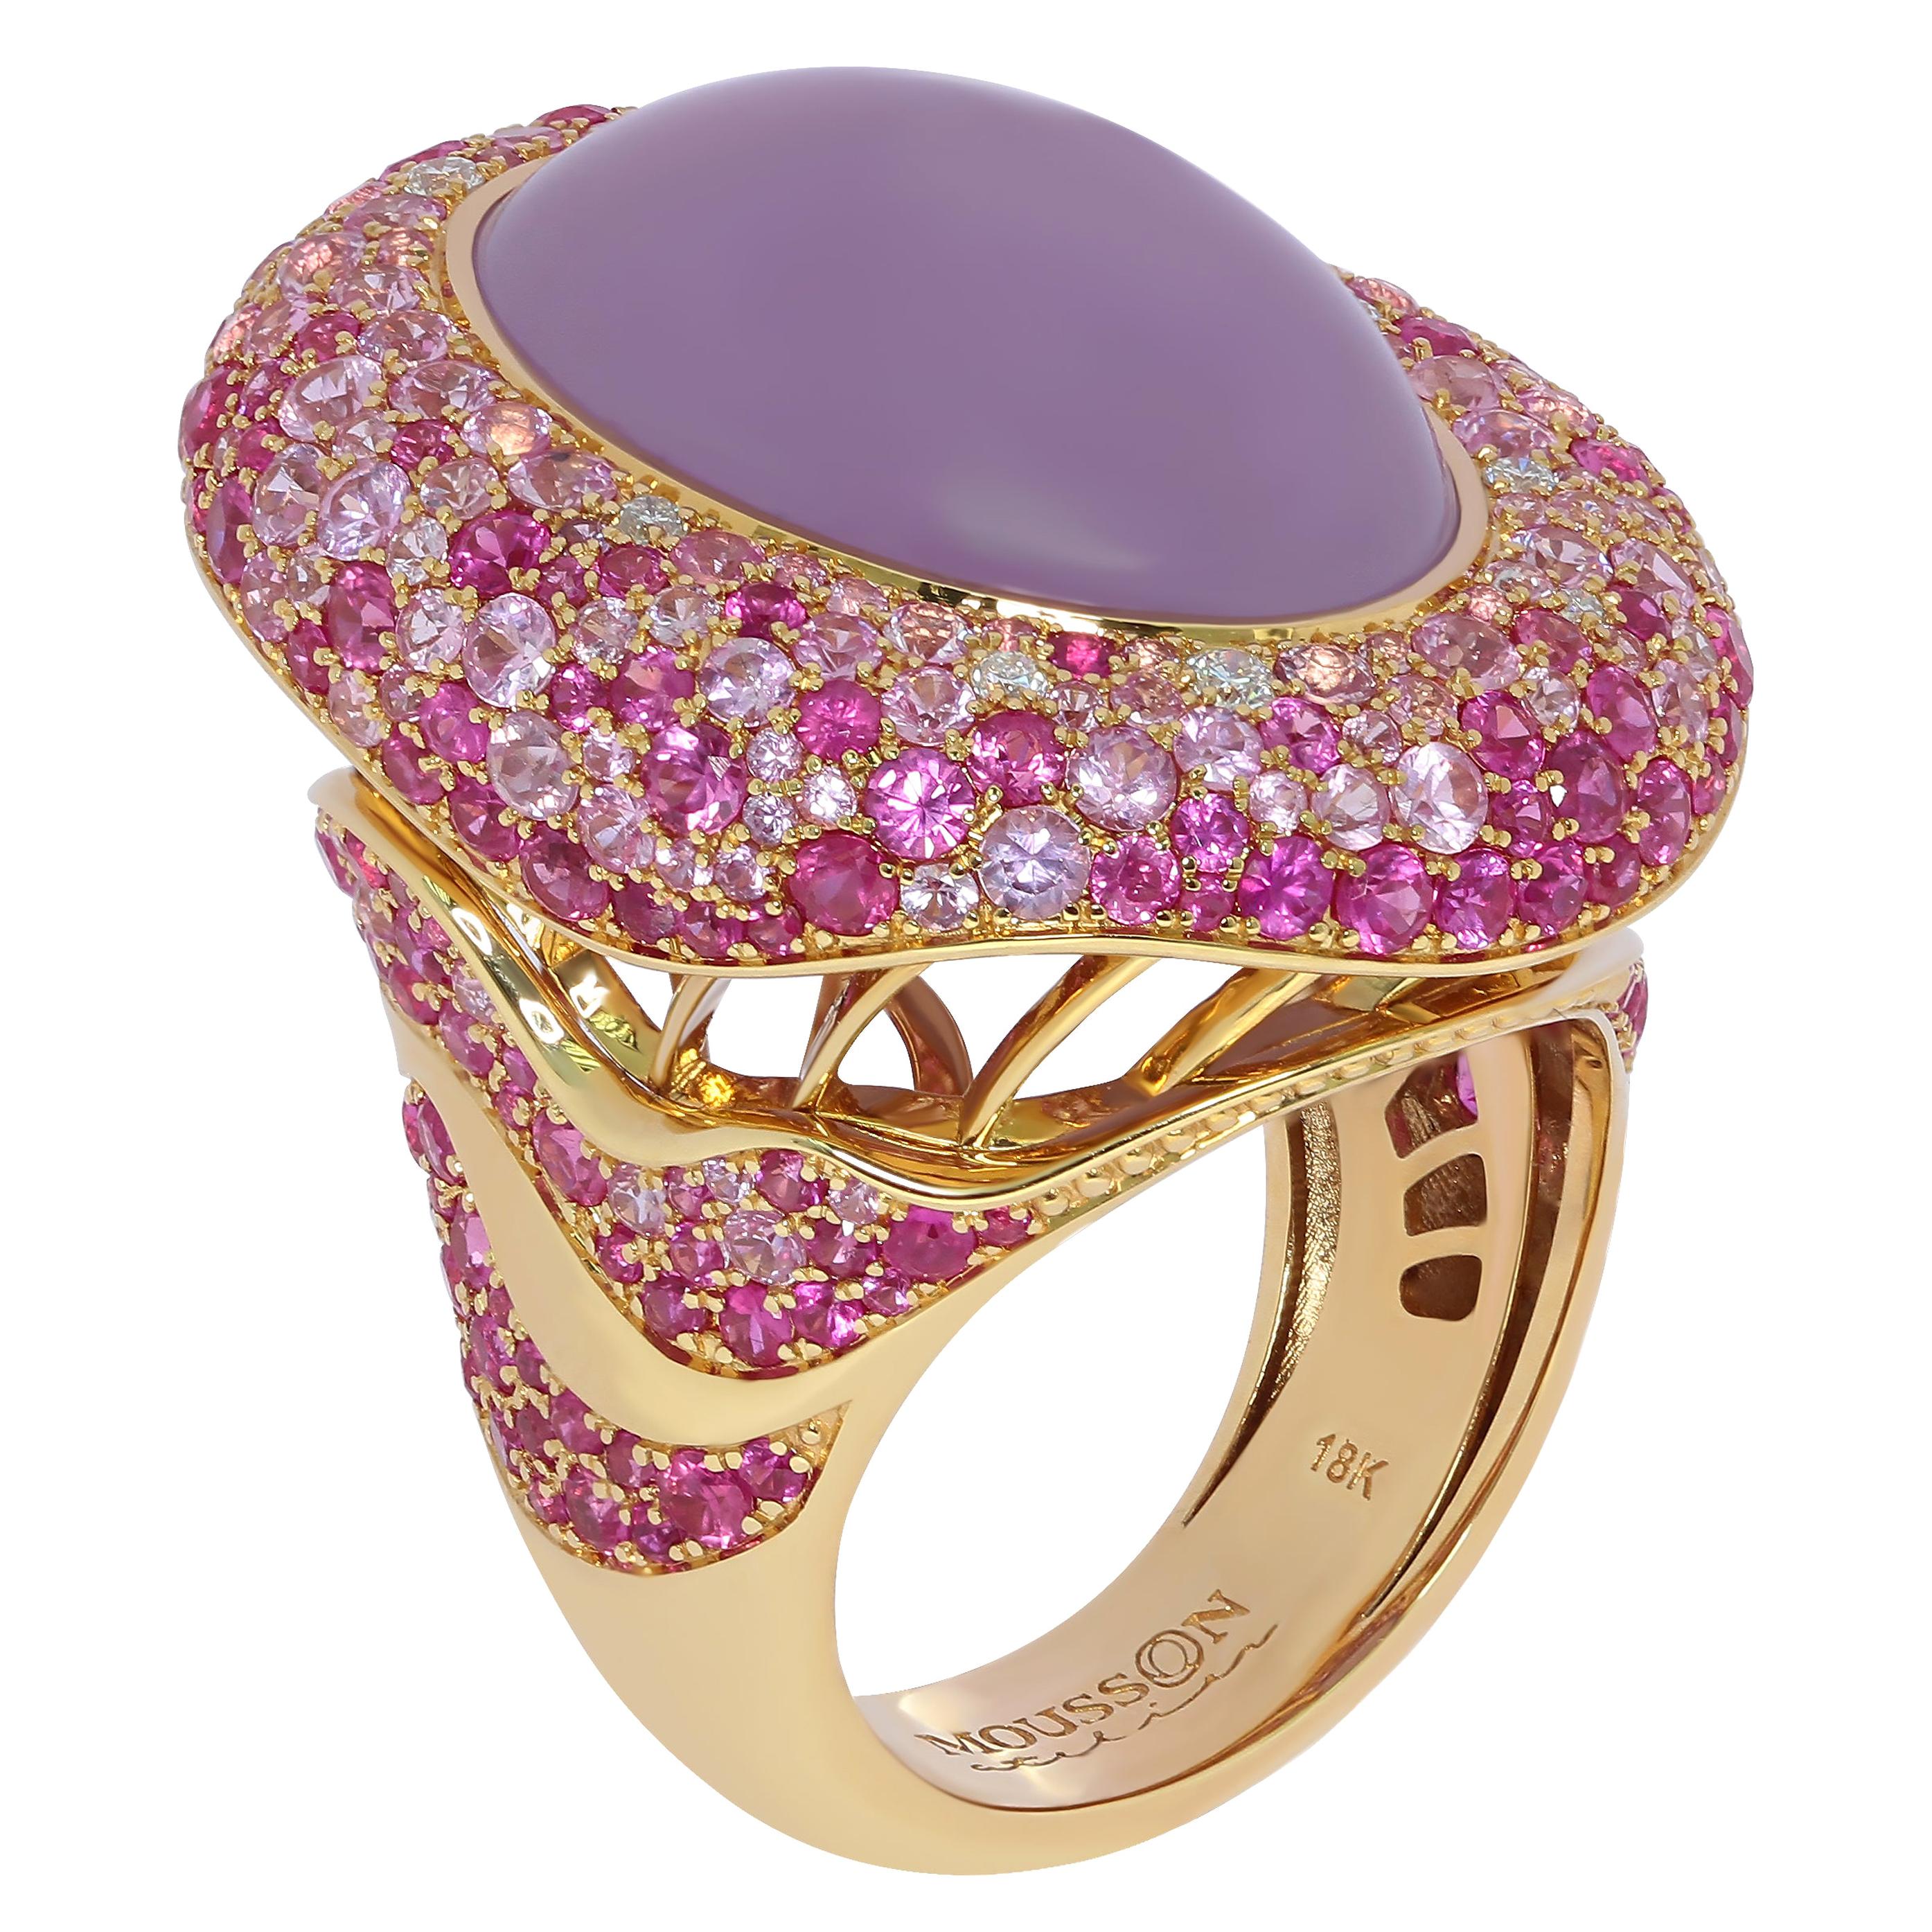 Bague en or jaune 18 carats avec calcédoine violette, saphir rose de 16,30 carats et diamants